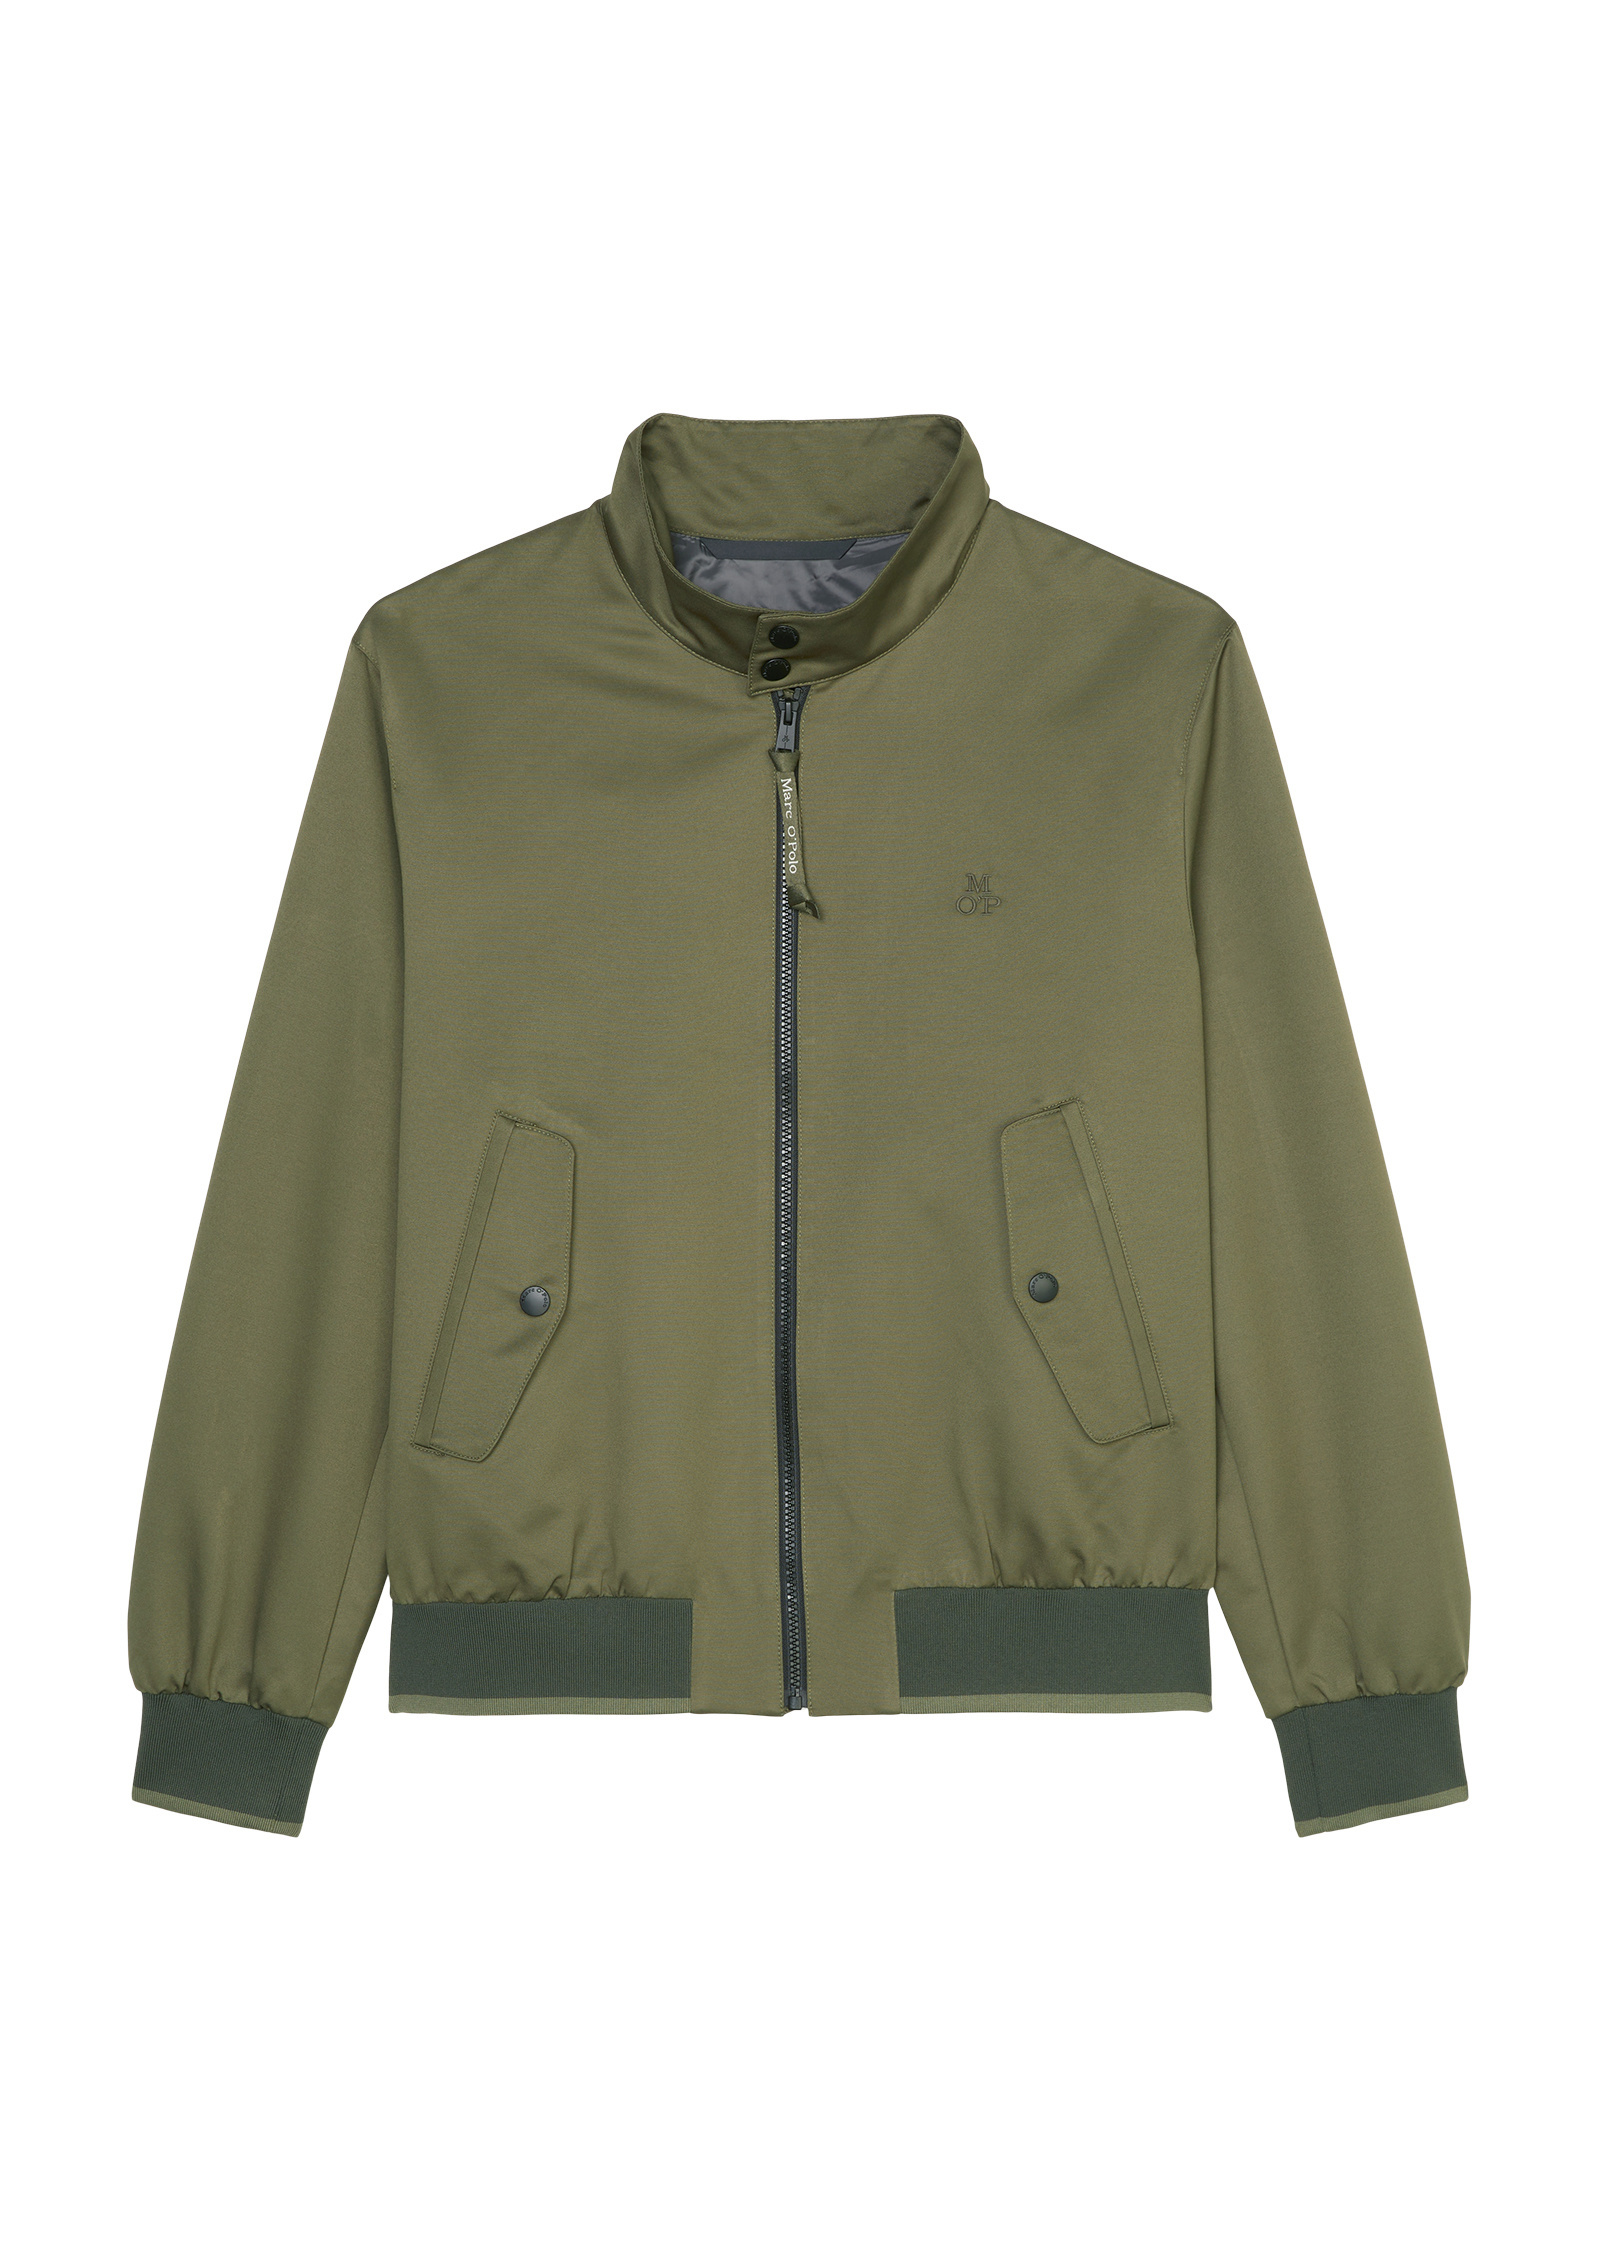 Куртка Marc O'Polo Blouson regular, цвет asher green куртка marc o polo blouson regular оливковый